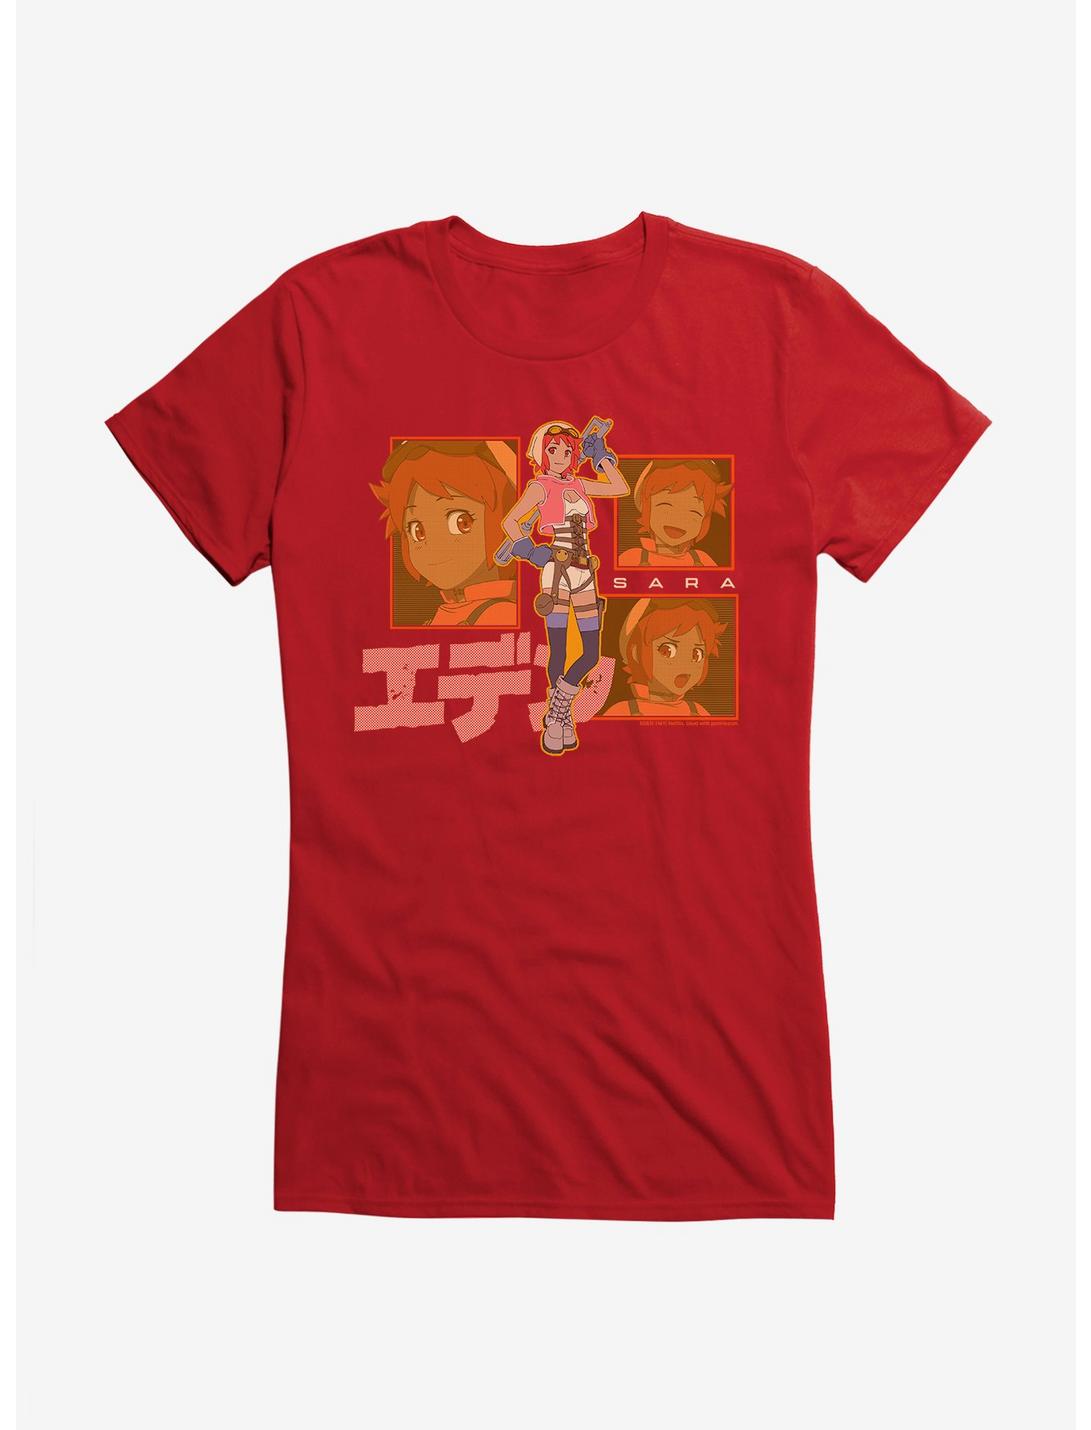 Eden Sara Japanese Text Logo Girls T-Shirt, RED, hi-res